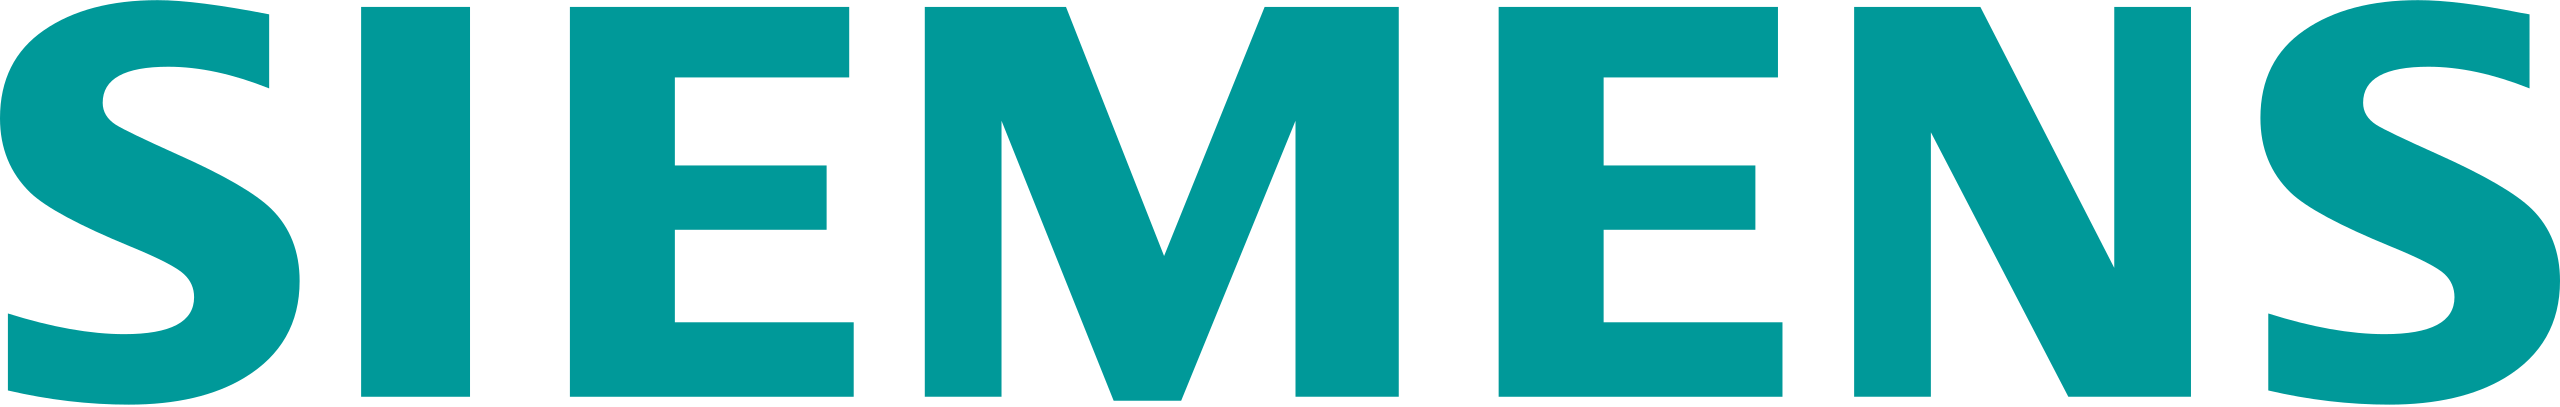 Customer logo Siemens written in green - Full service Digital Agency SUNZINET